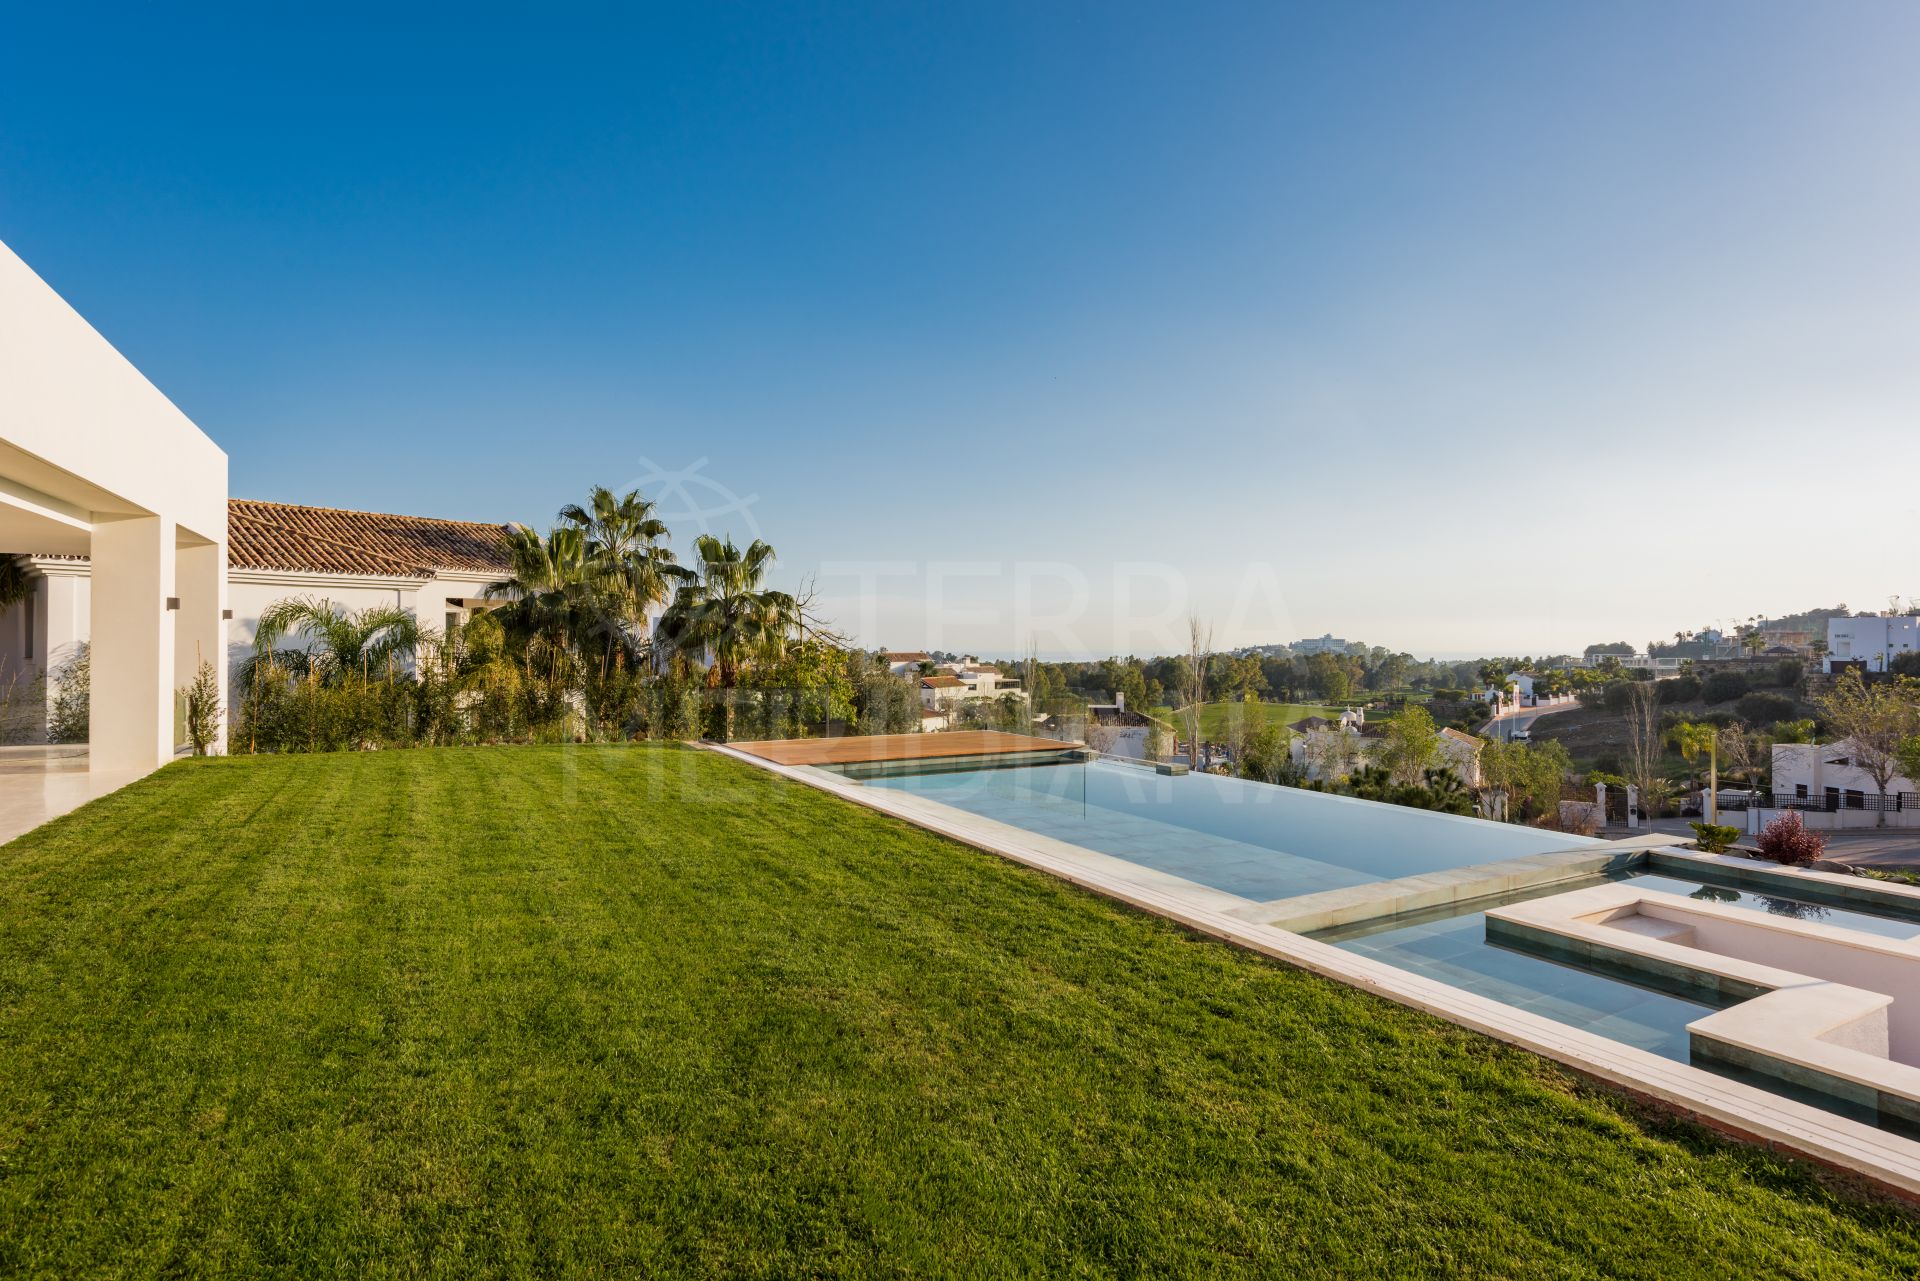 Brand new modern villa for sale in La Alqueria in Benahavis, with private pool and sea views